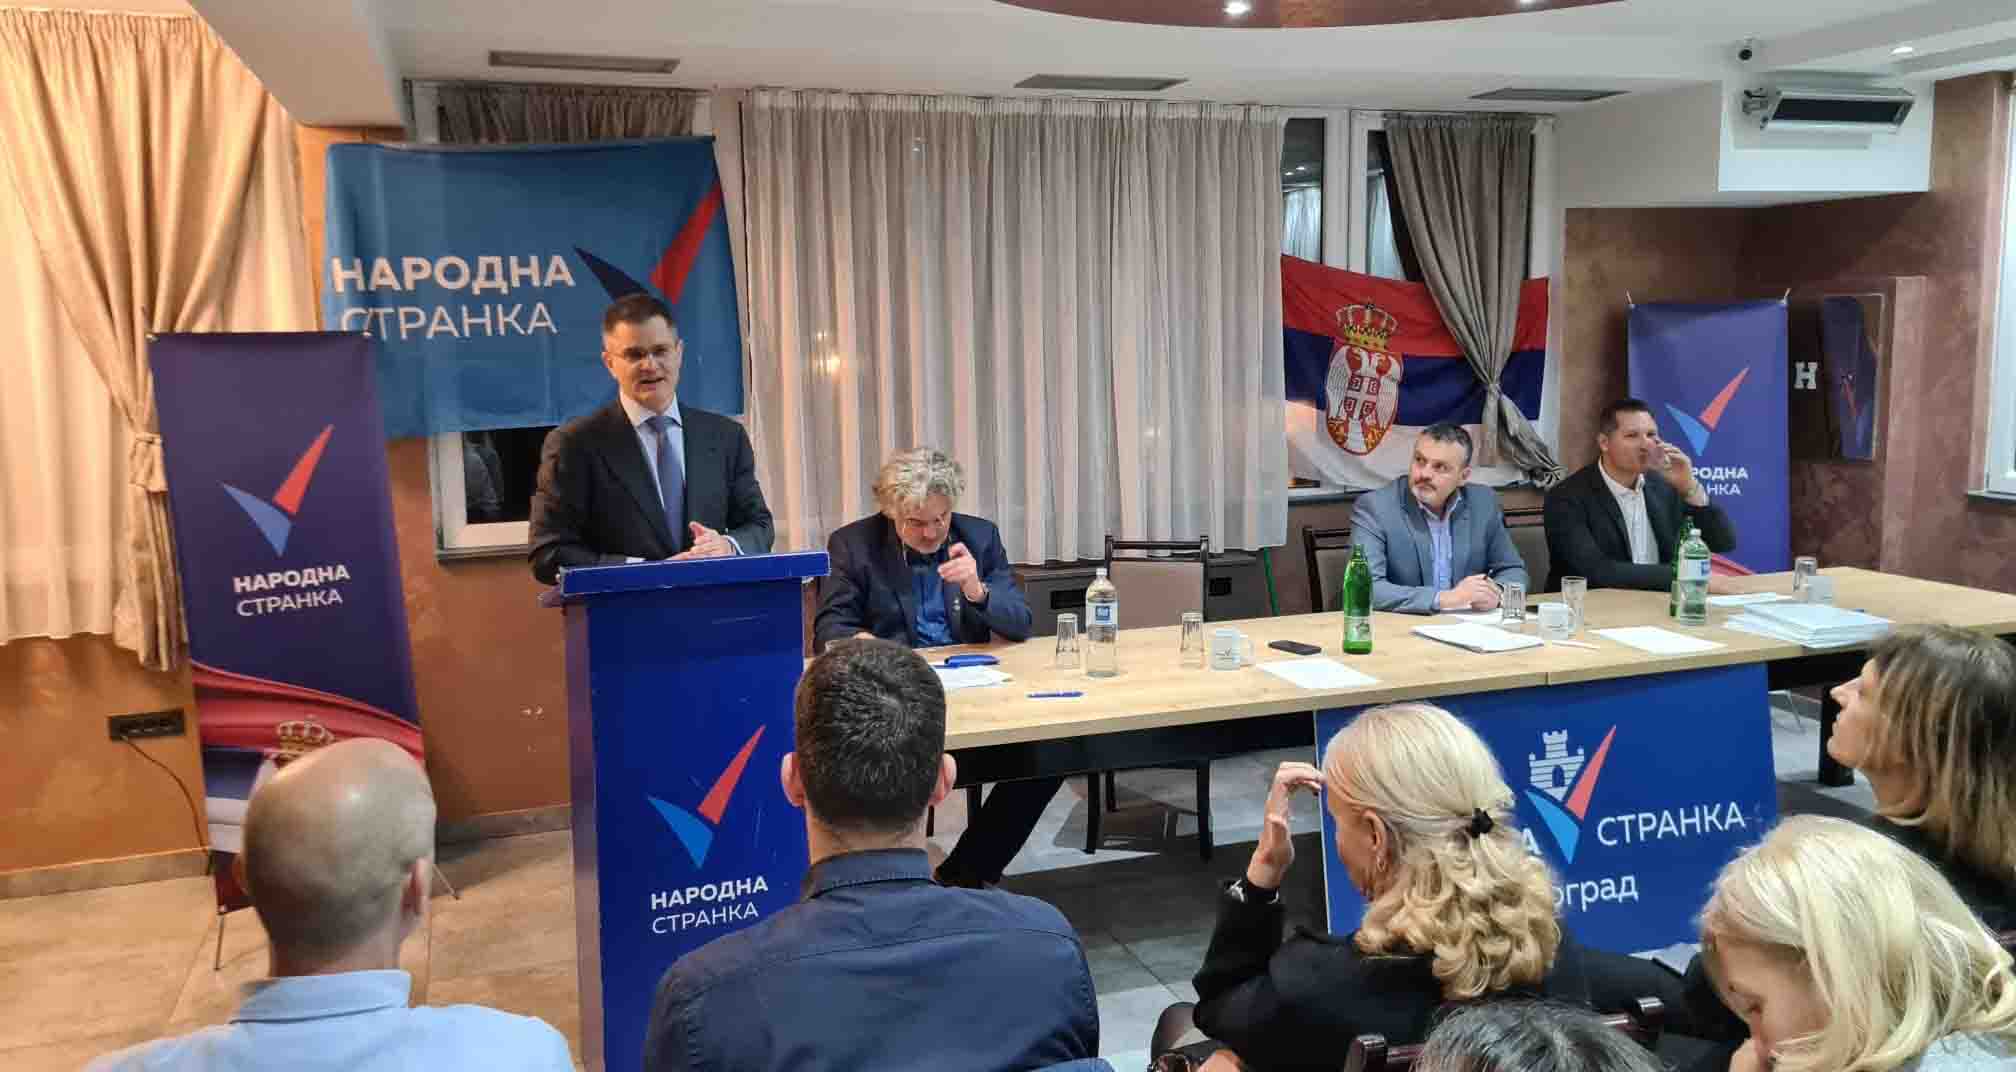 Јеремић: Народна странка је мост између грађанског и националног пола, пружамо руку сарадње